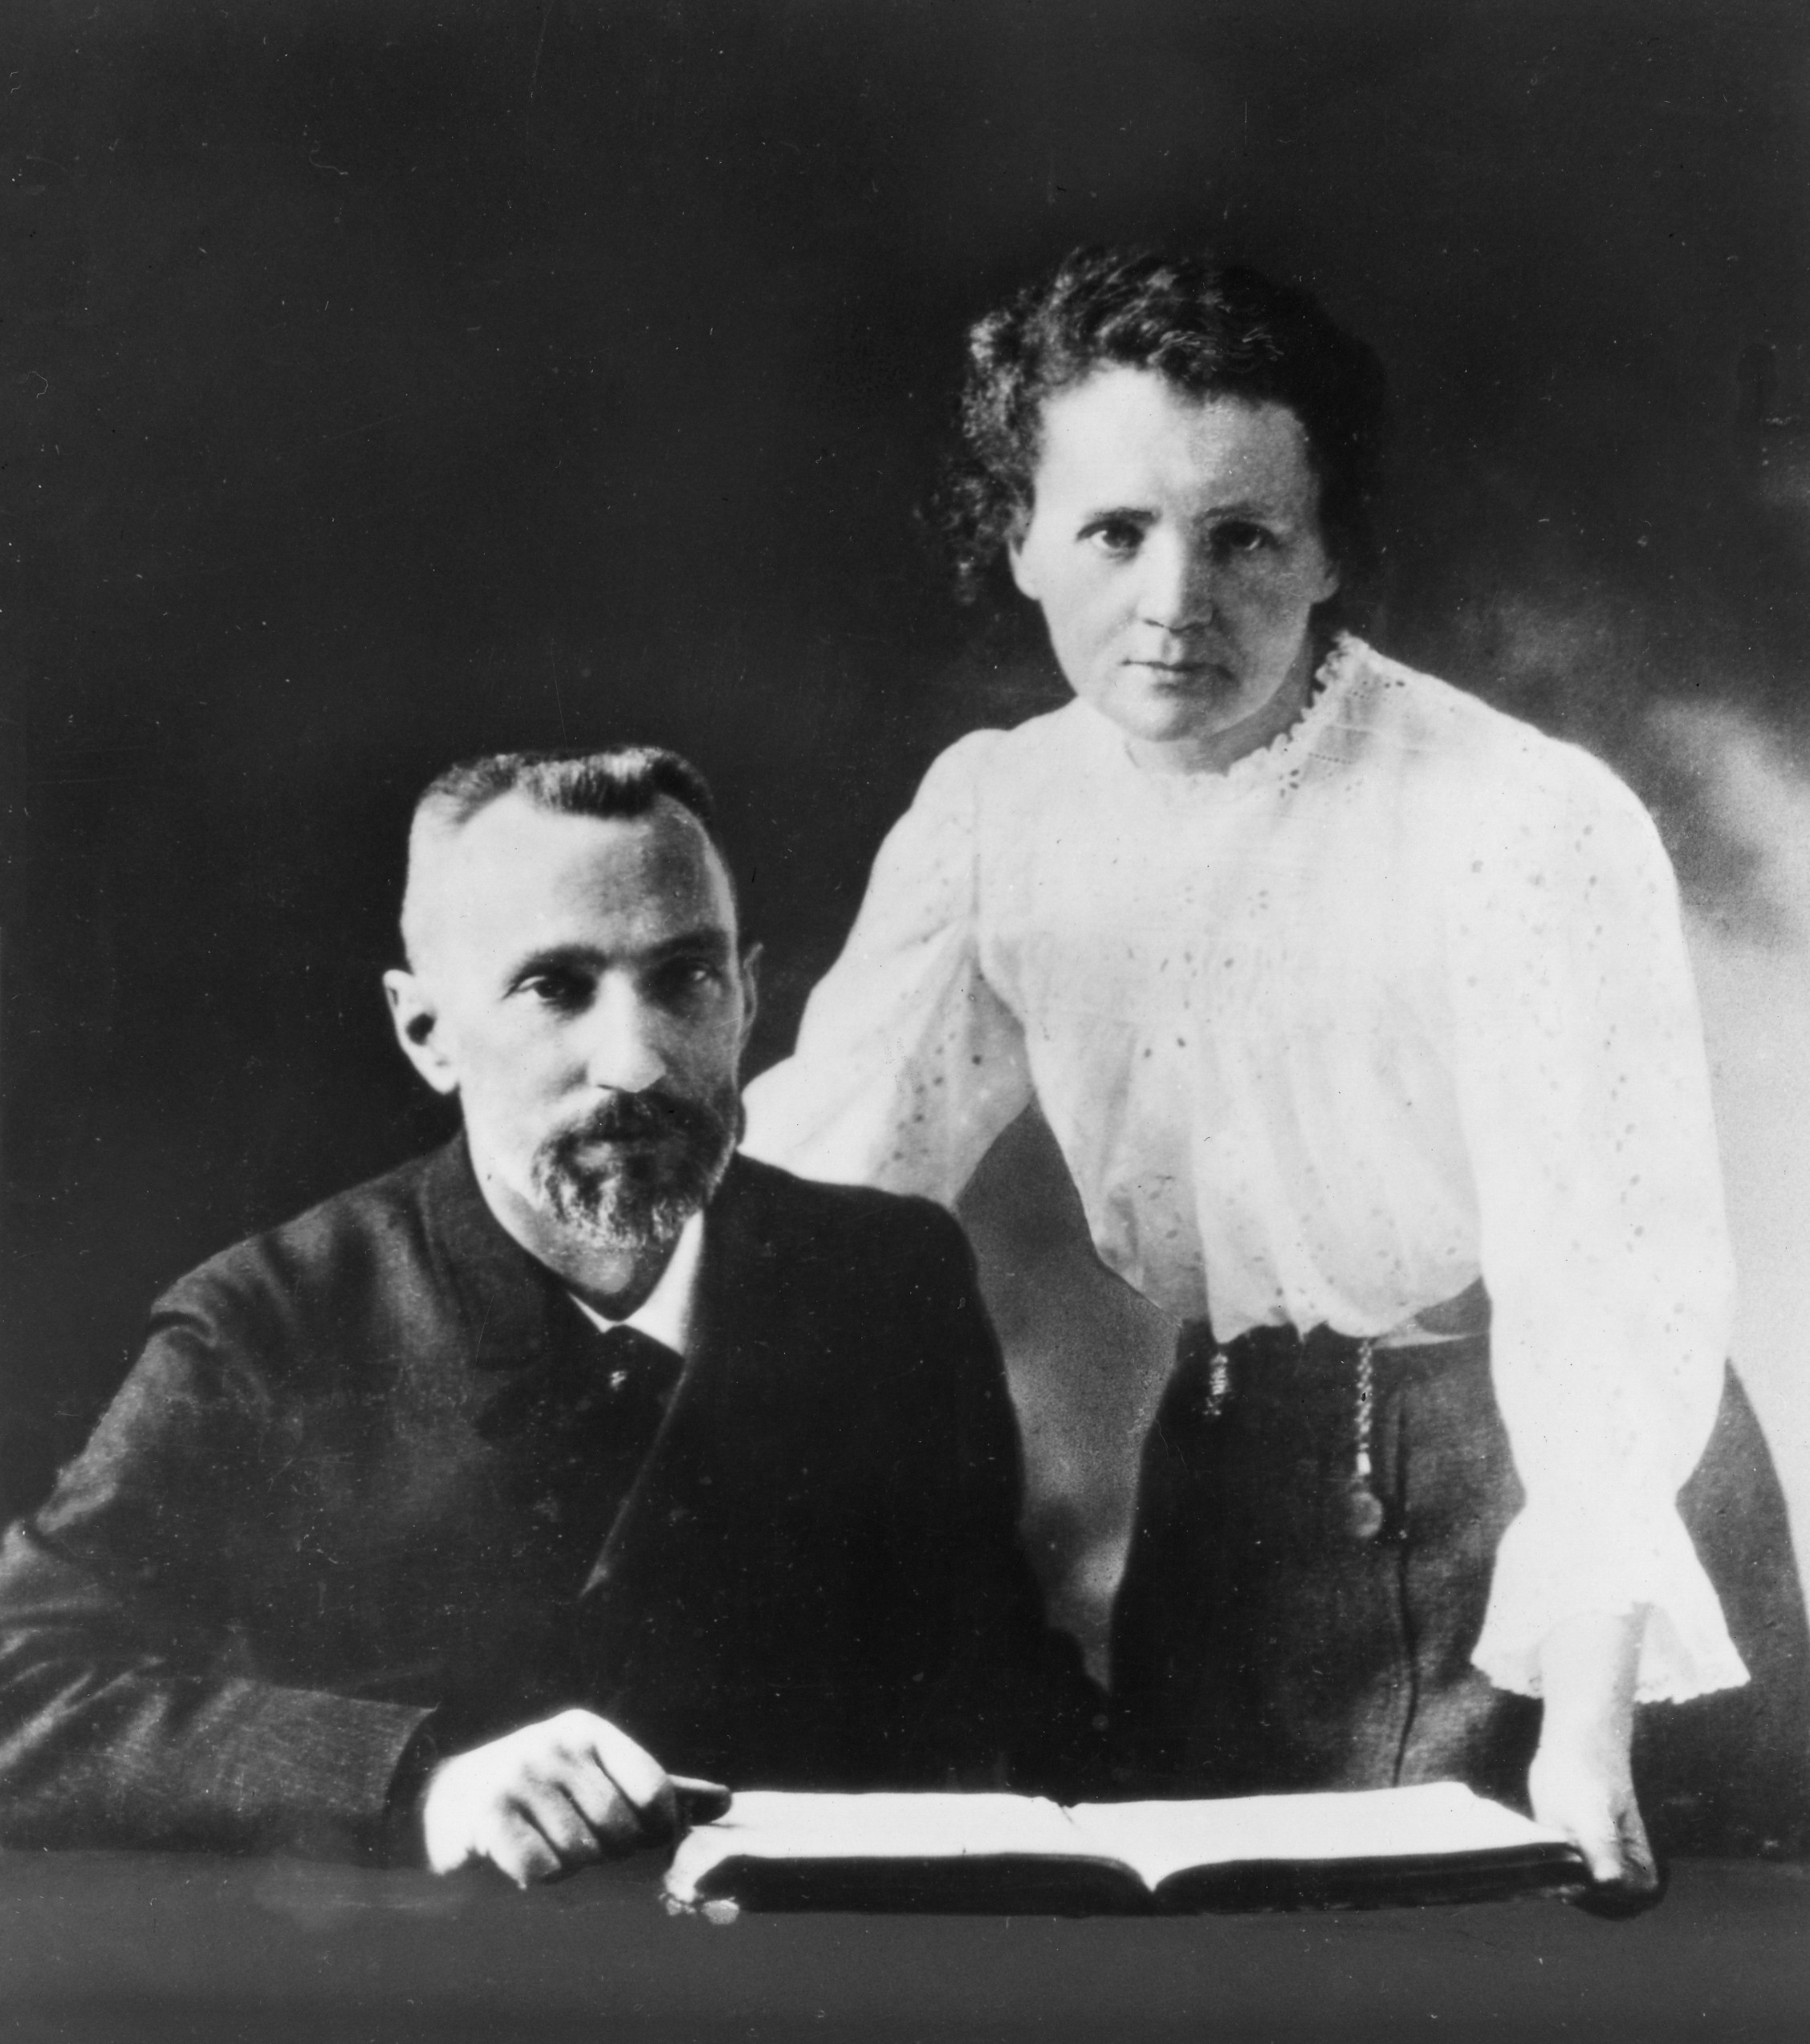  O físico Józef Wierusz-Kowalski apresentou Pierre e Marie na primavera de 1894 (Foto: Wikimedia Commons)